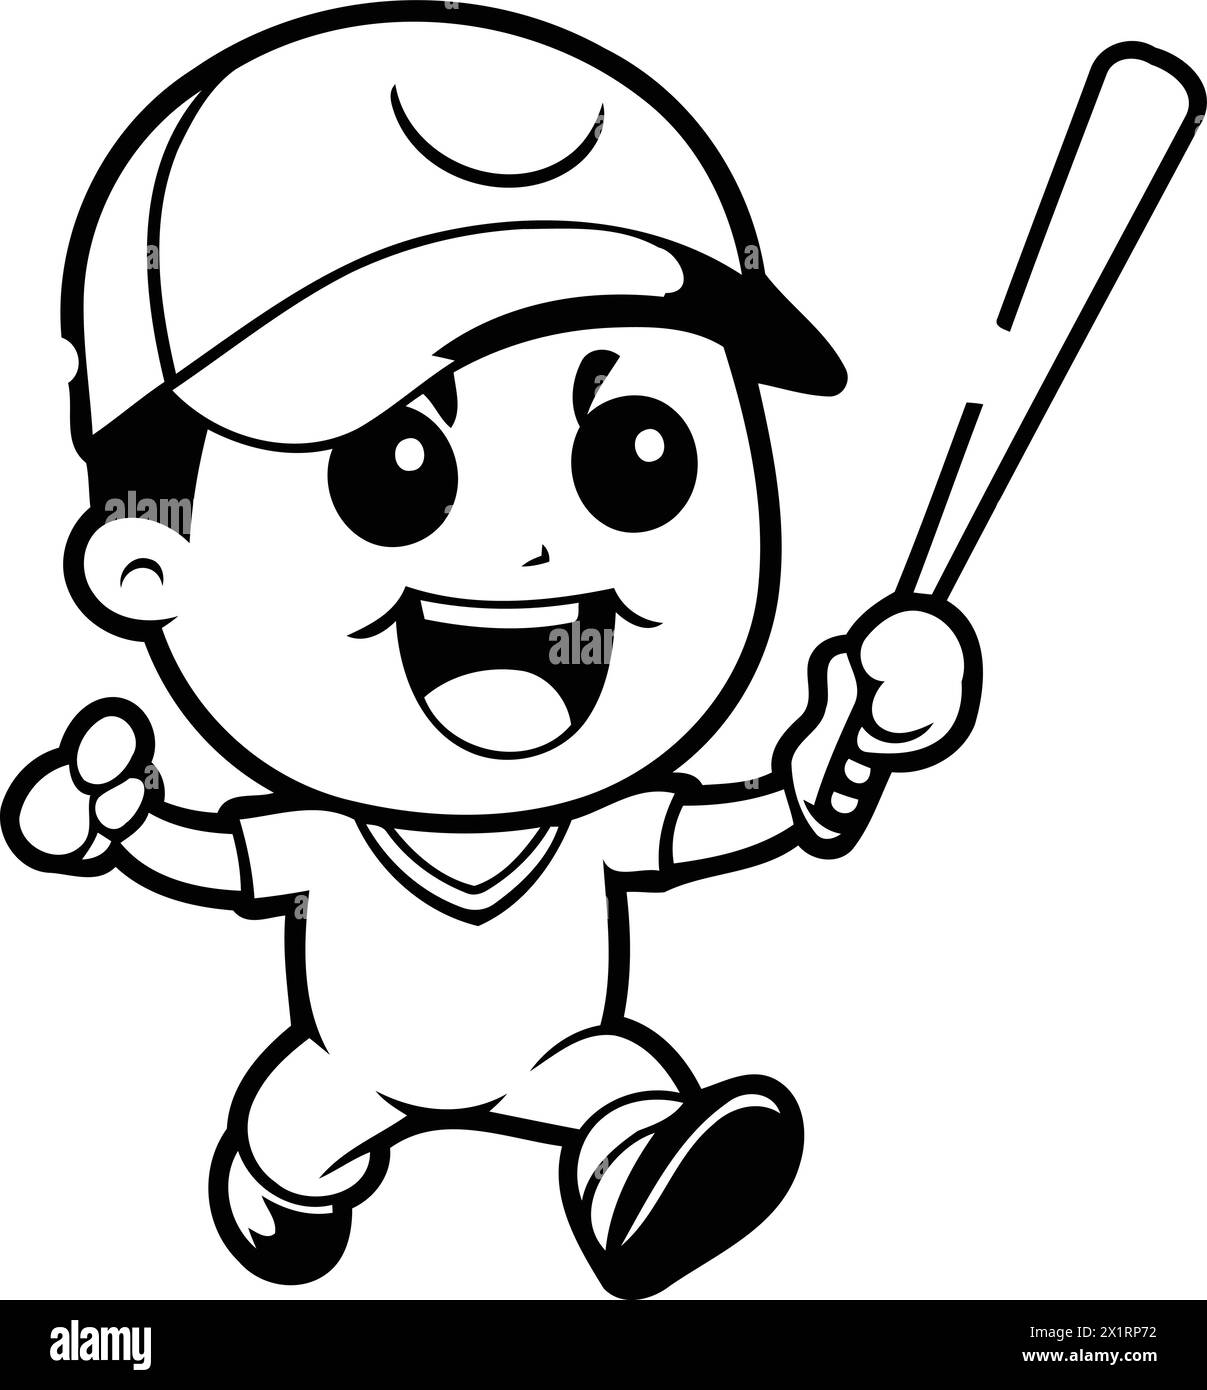 Illustrazione vettoriale di Cartoon Mascot, giocatore di baseball. Illustrazione Vettoriale